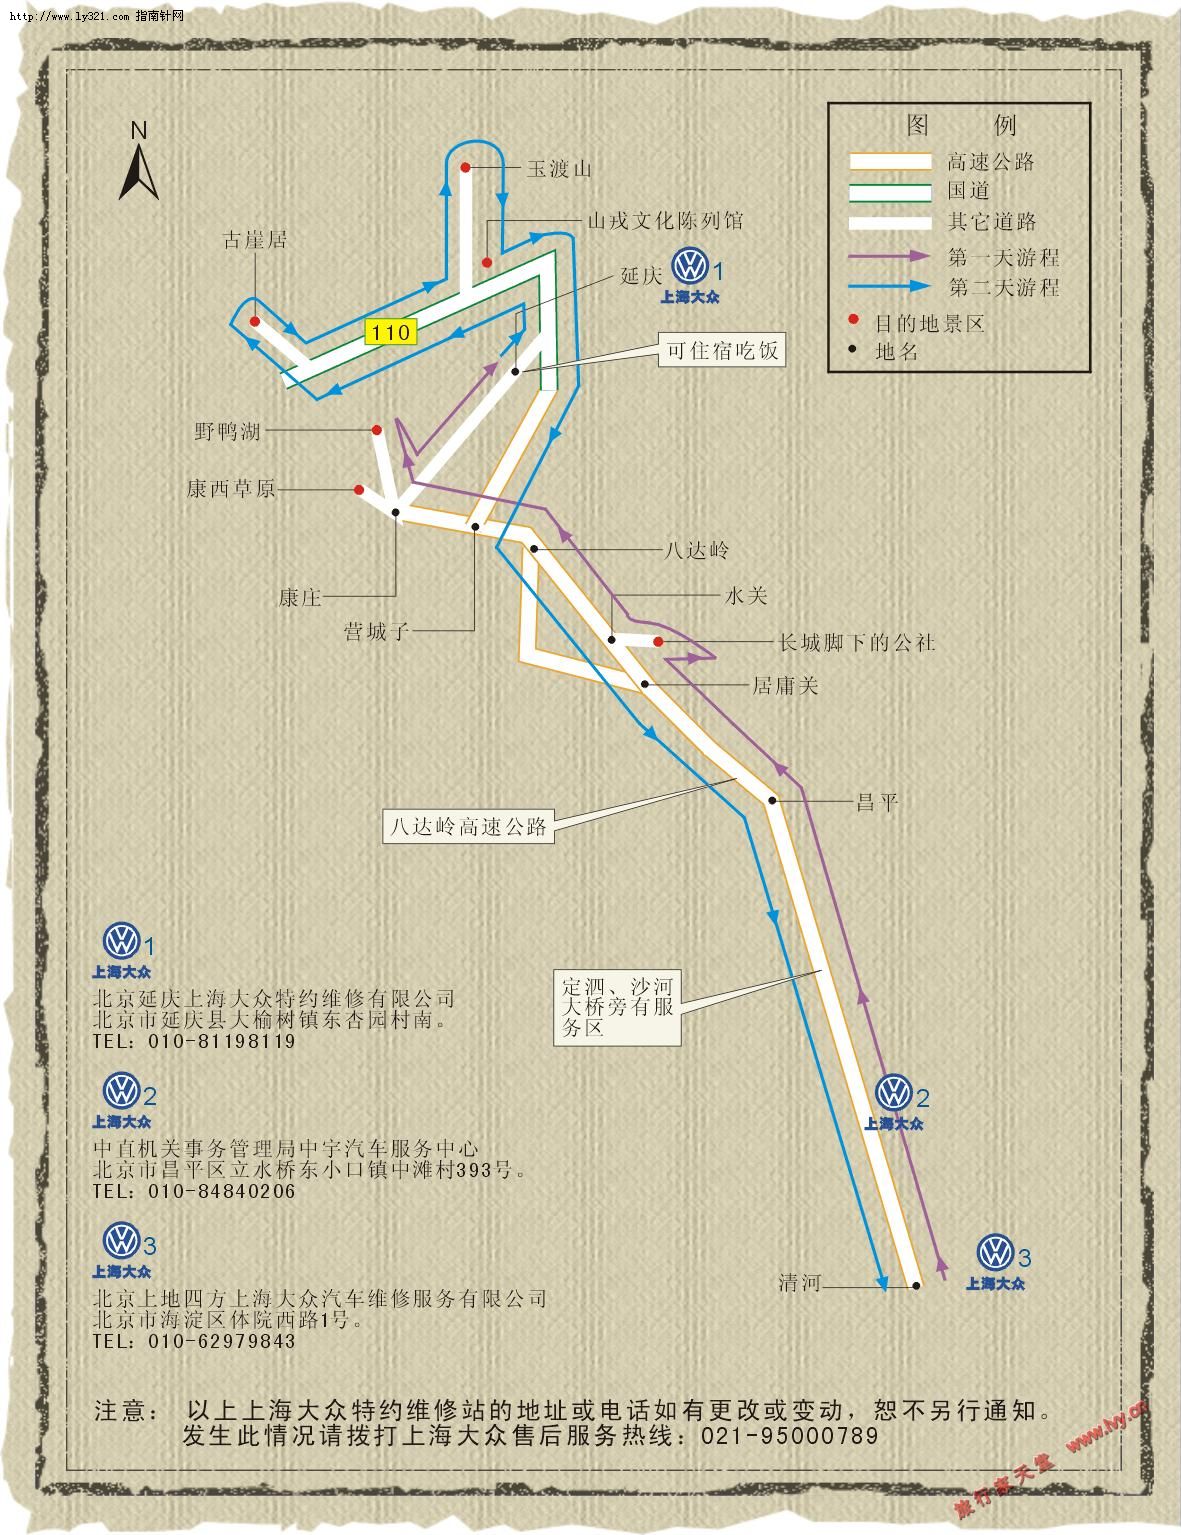 野鸭湖玉渡山自驾线路图_北京旅游景点地图查询